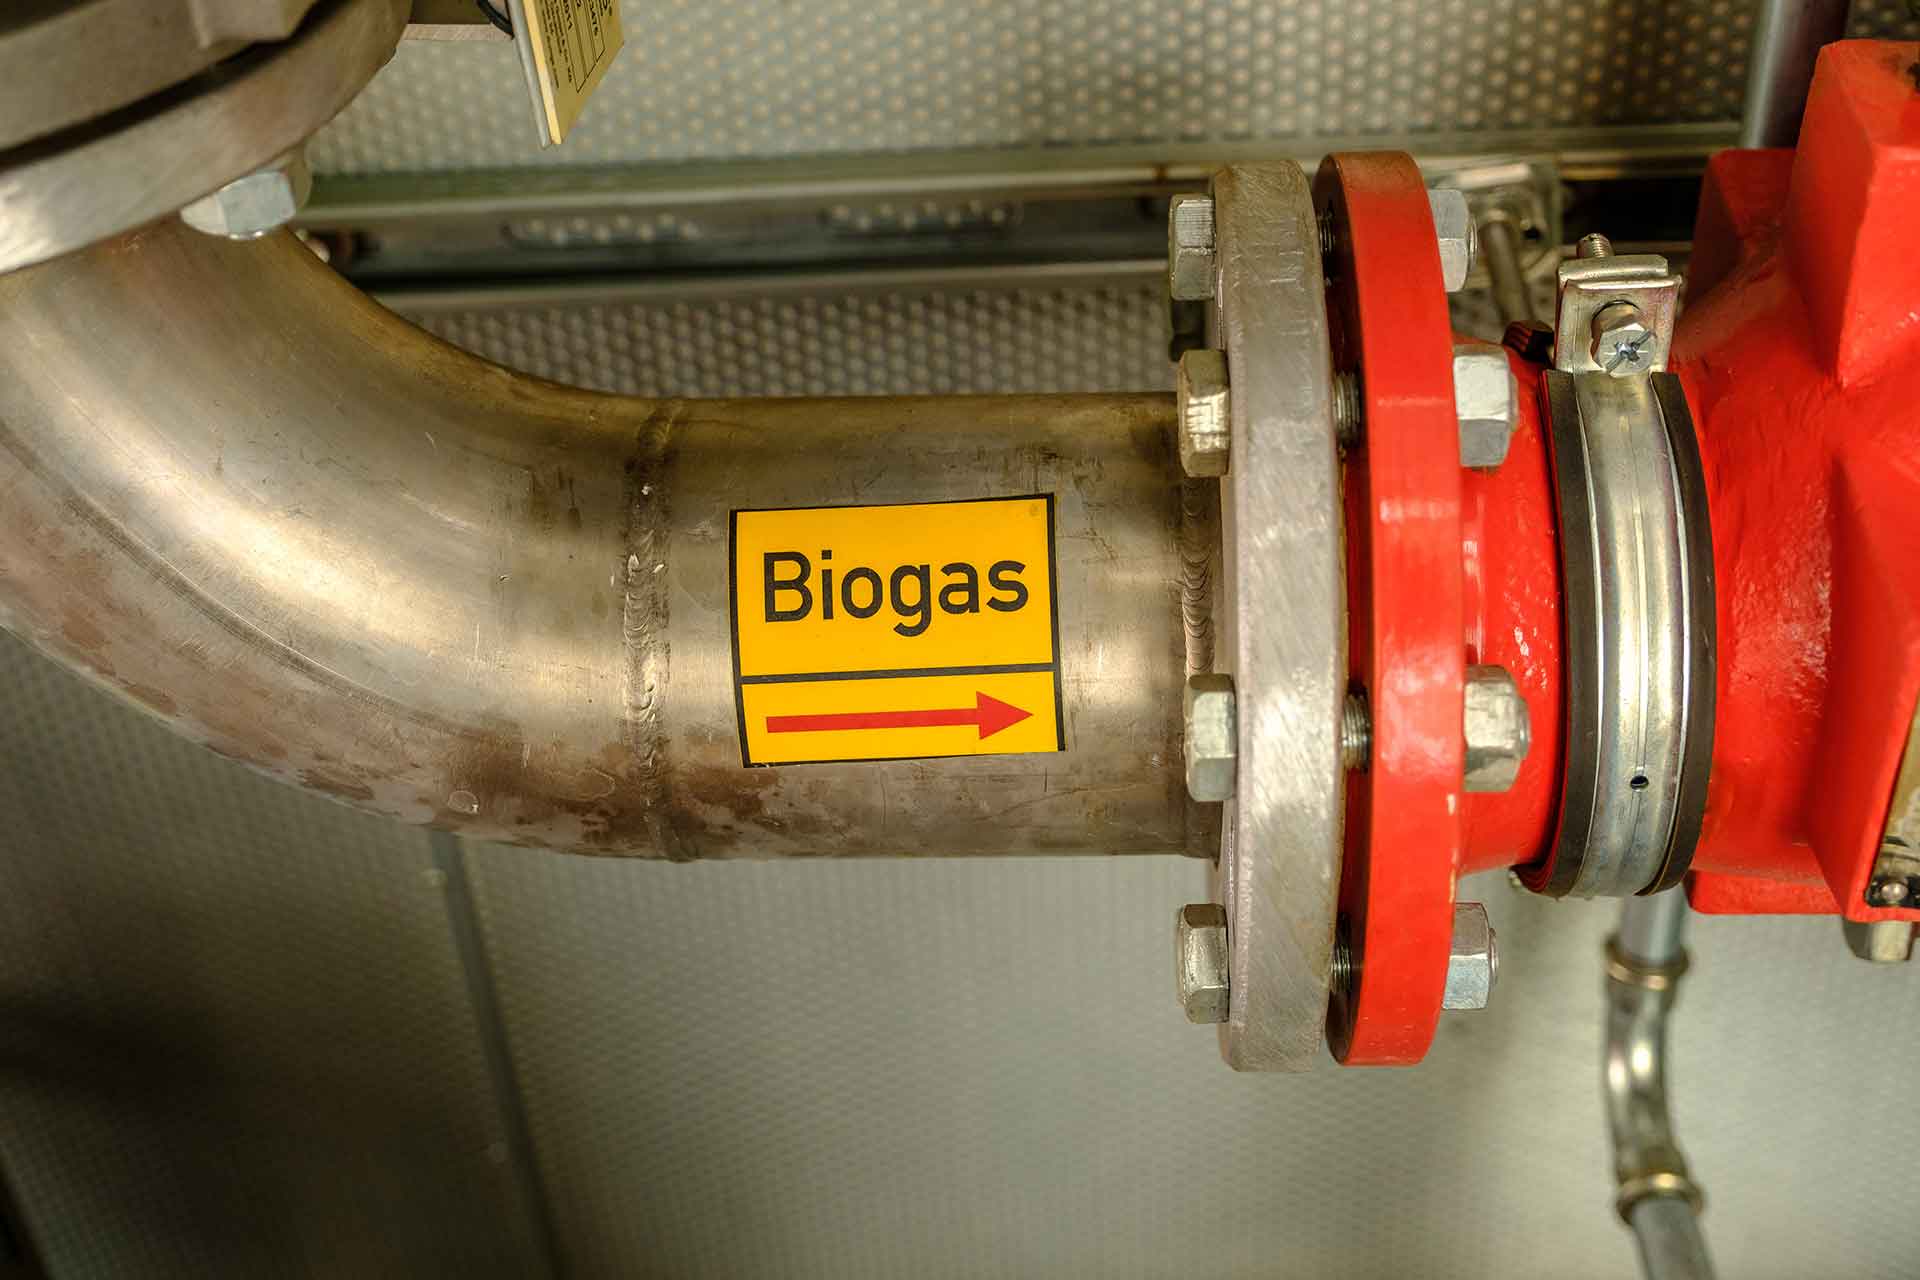 Biogasaufbereitung: Rohr-Kennzeichnung Biogas in Biogas-Anlage